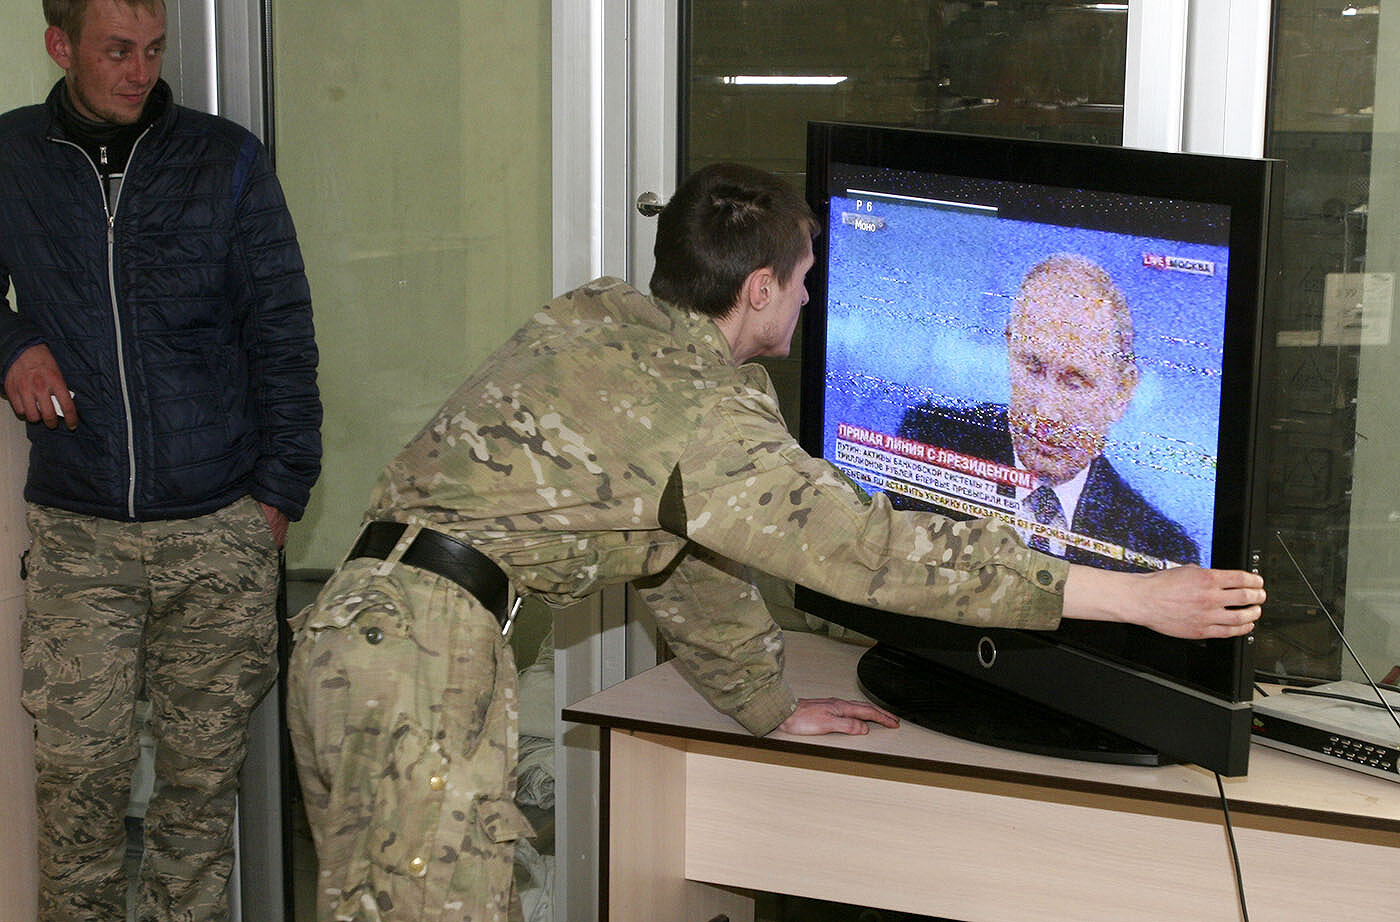 <p>Украина, Донецкая область, 2015 год. Представители самопровозглашенной Донецкой народной республики настраивают телевизор во время трансляции</p>